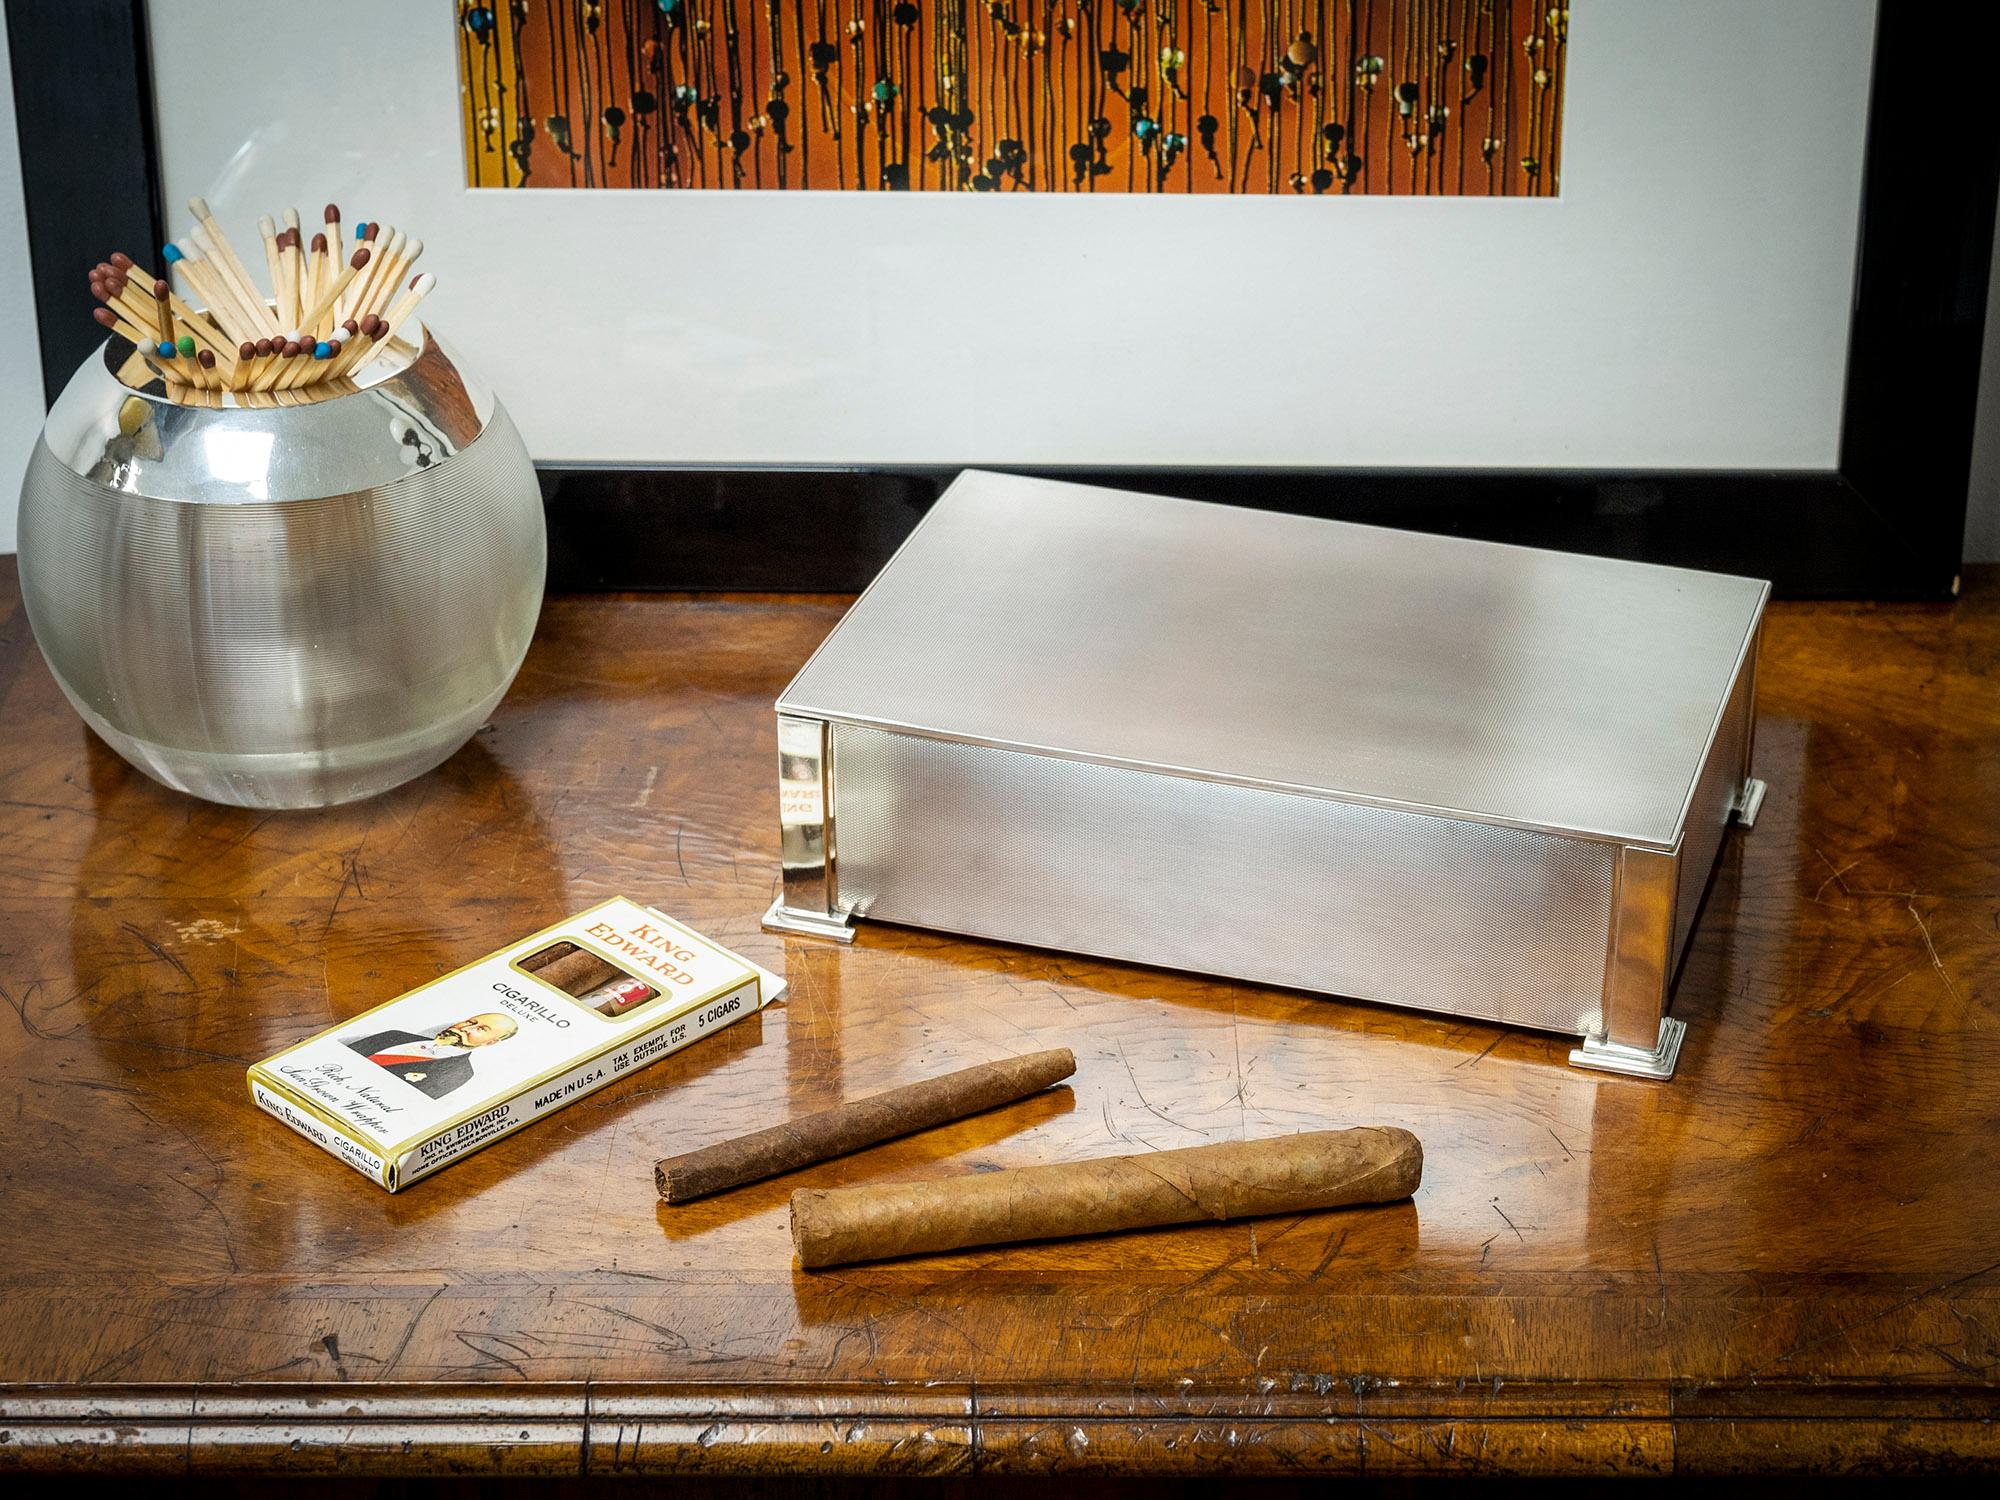 Avec une doublure en bois de cèdre

Nous avons le plaisir de vous proposer cette boîte à cigares Art déco en argent massif, issue de notre Collection S. La boîte à cigares de forme rectangulaire en argent sterling présente des panneaux tournés à la